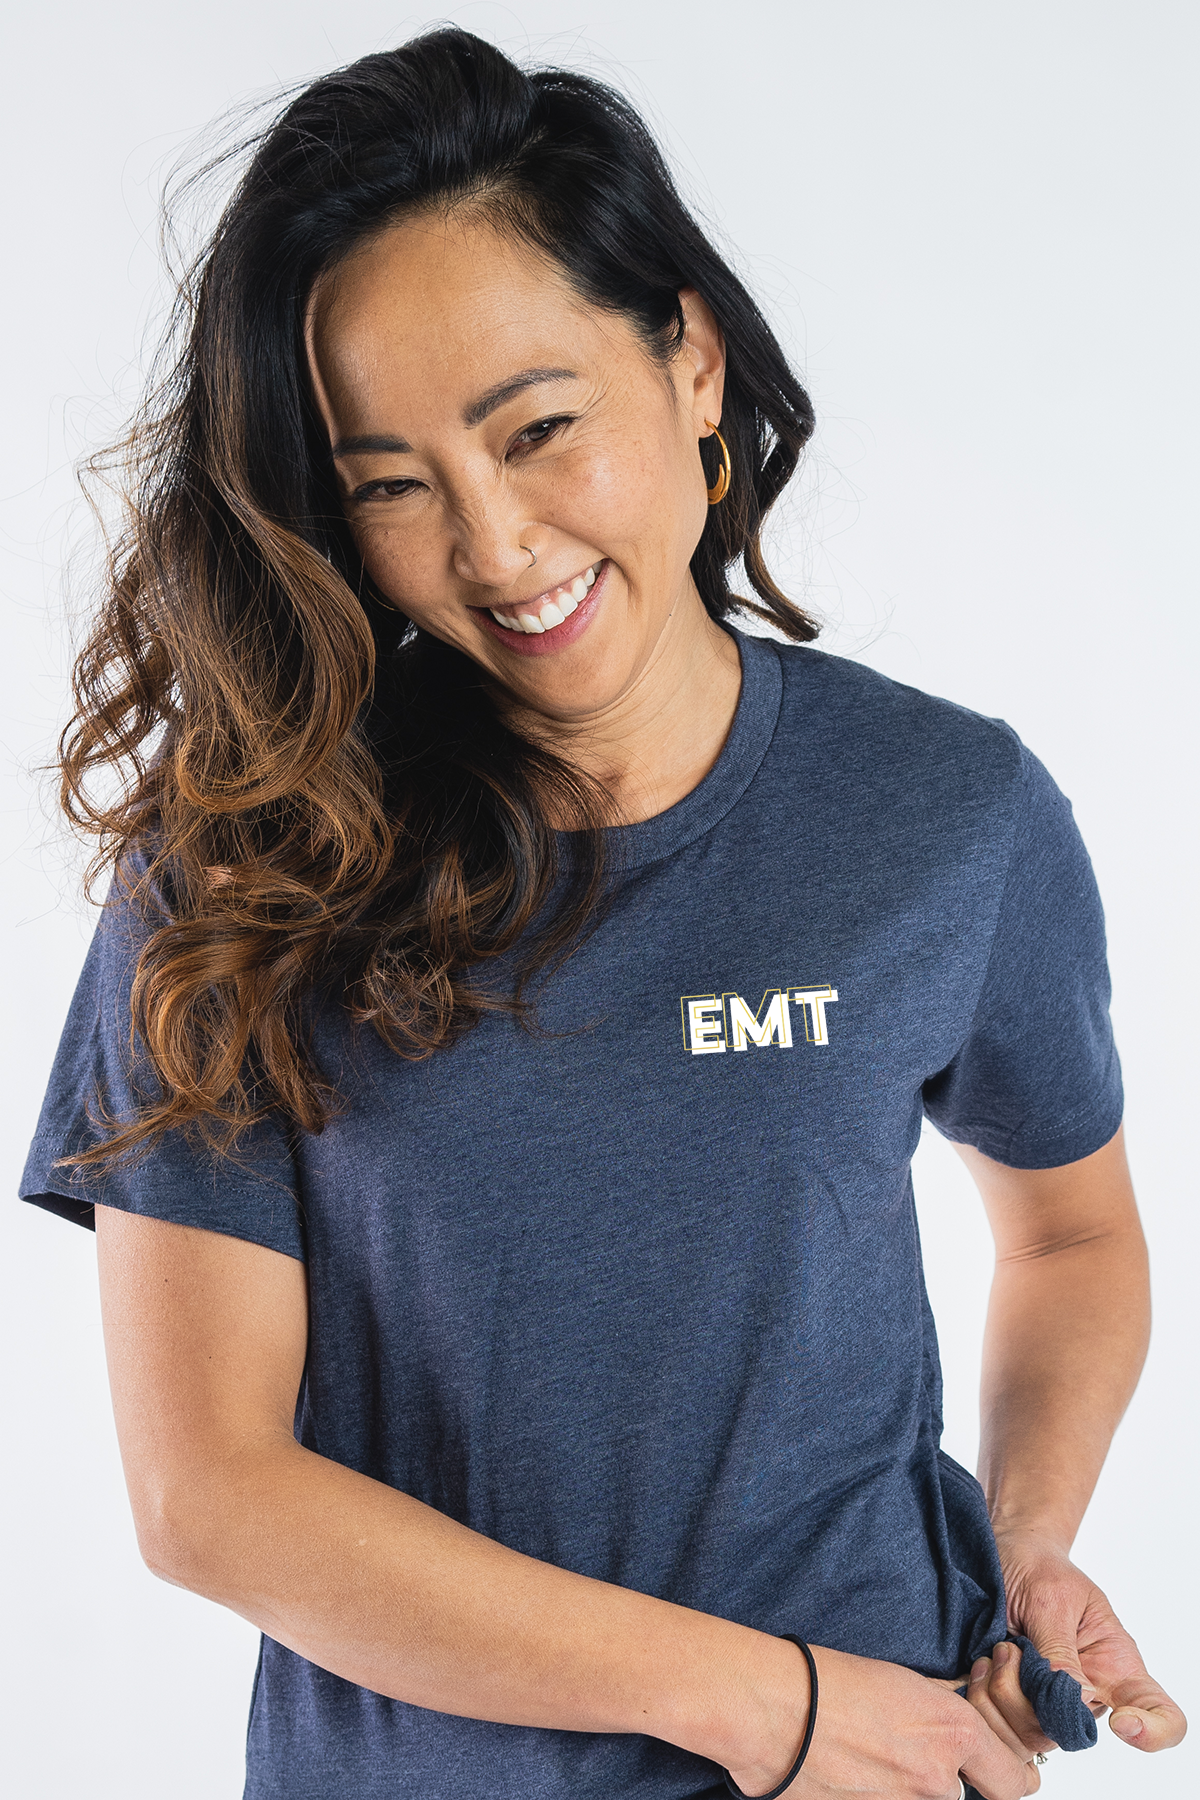 EMT Creds - Shirt